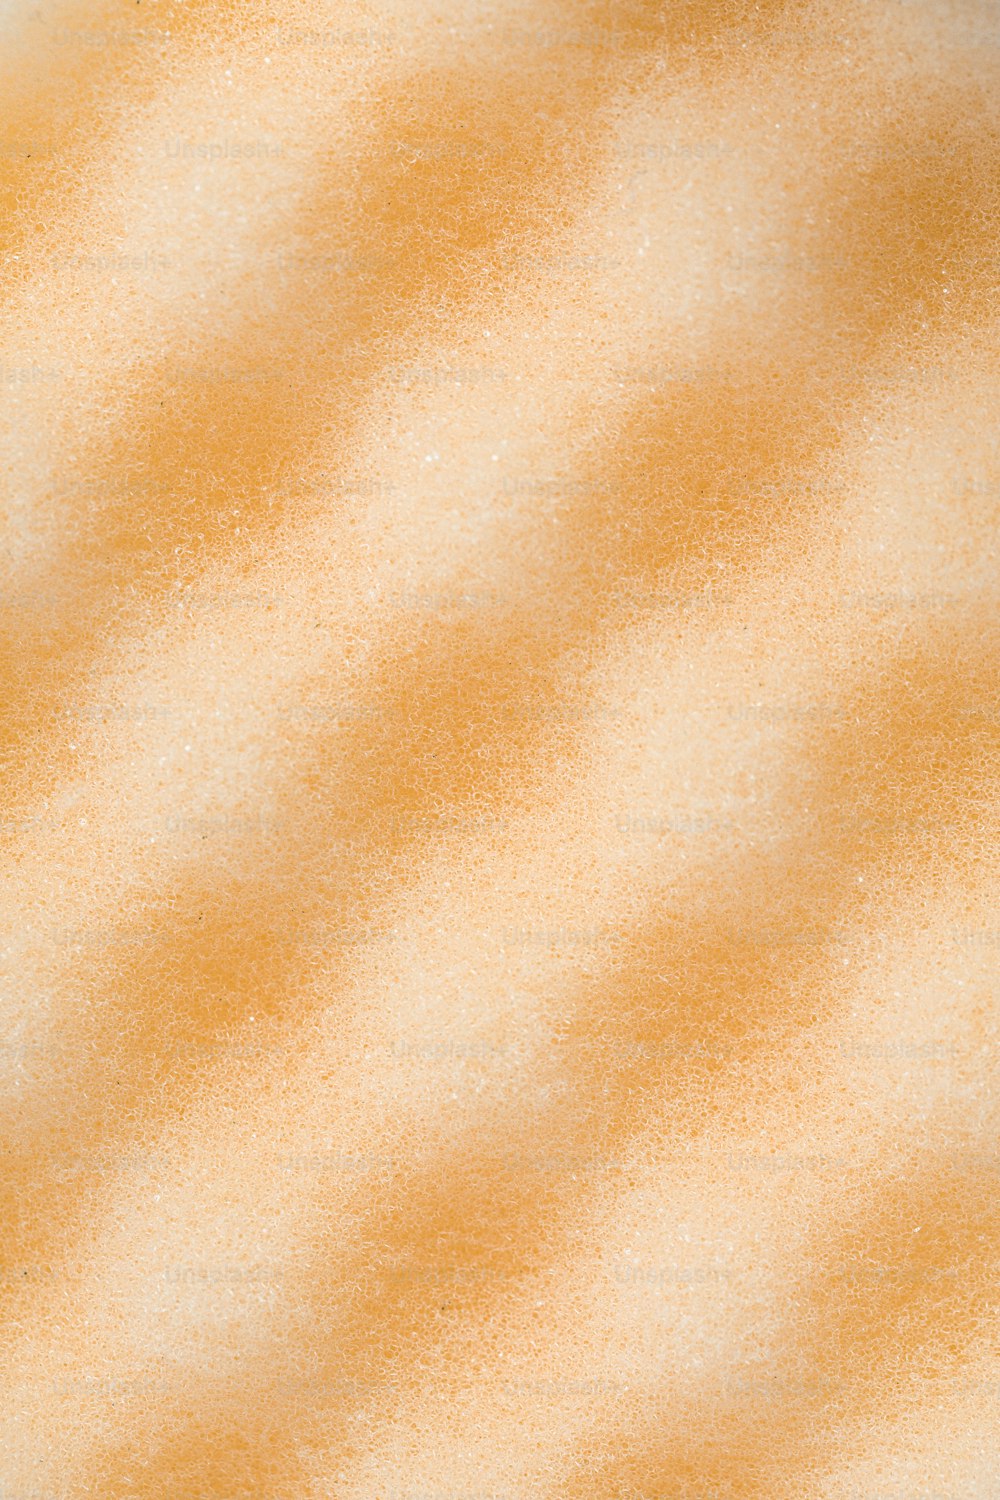 Un primer plano de un fondo naranja y blanco